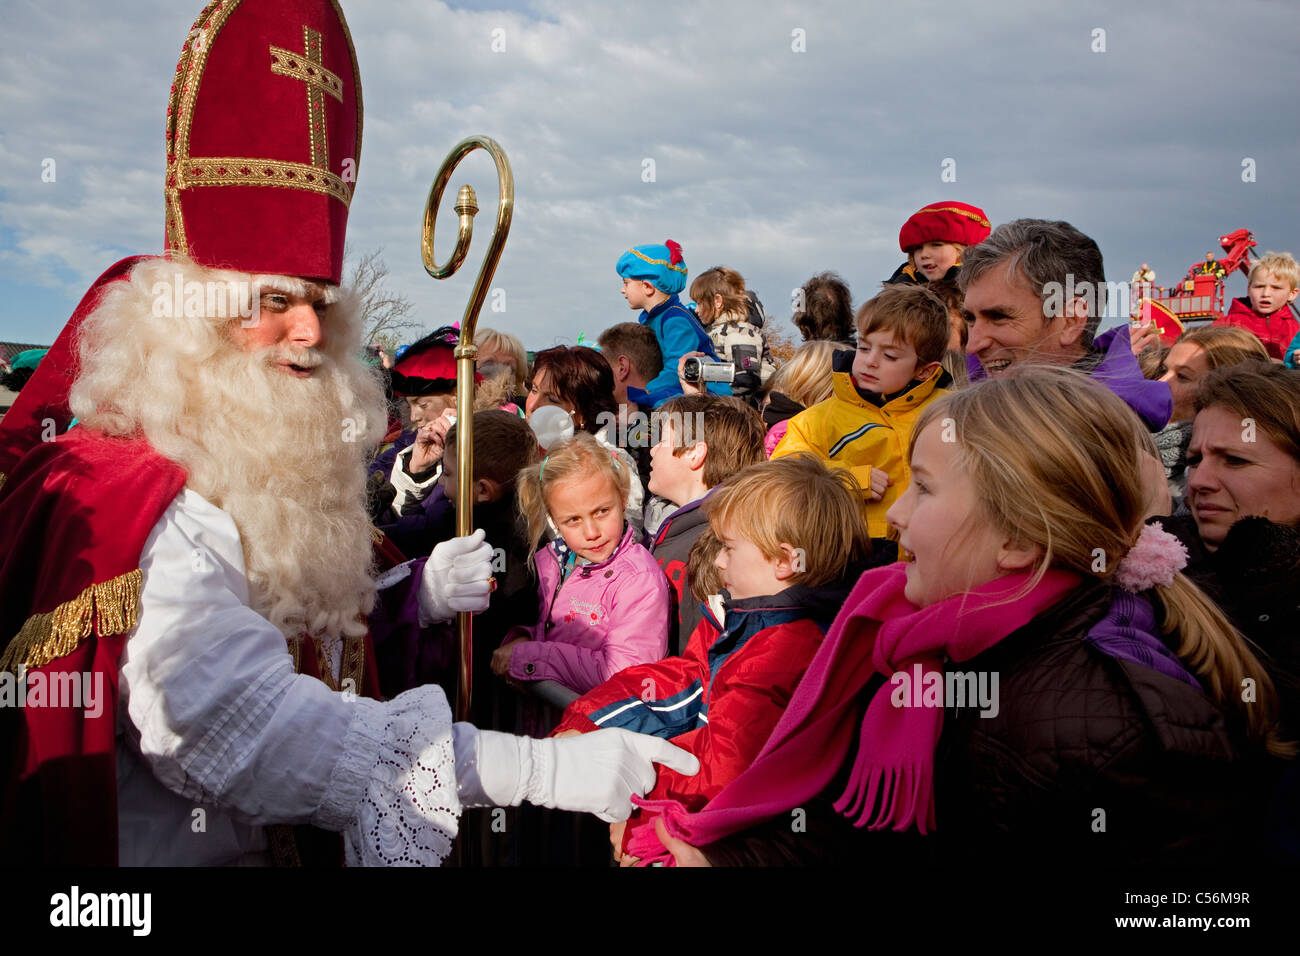 Les Pays-Bas, Loosdrecht, Festival de Sinterklaas ou Sint Nicolaas, célébrée chaque année le réveillon de Saint Nicolas le 5 décembre. Banque D'Images